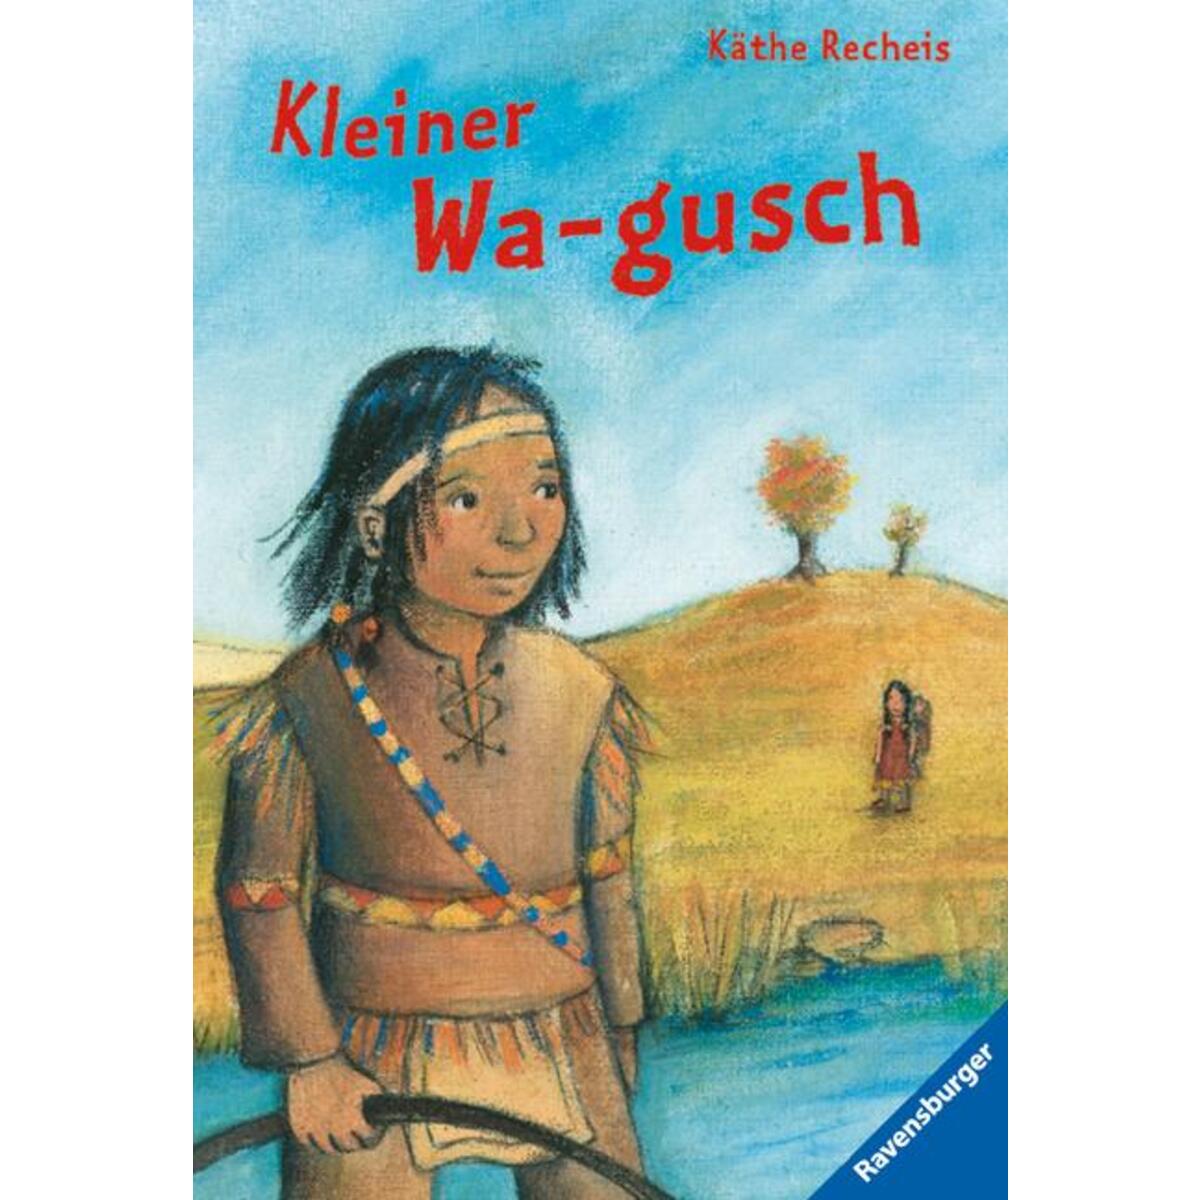 Kleiner Wa-gusch von Ravensburger Verlag